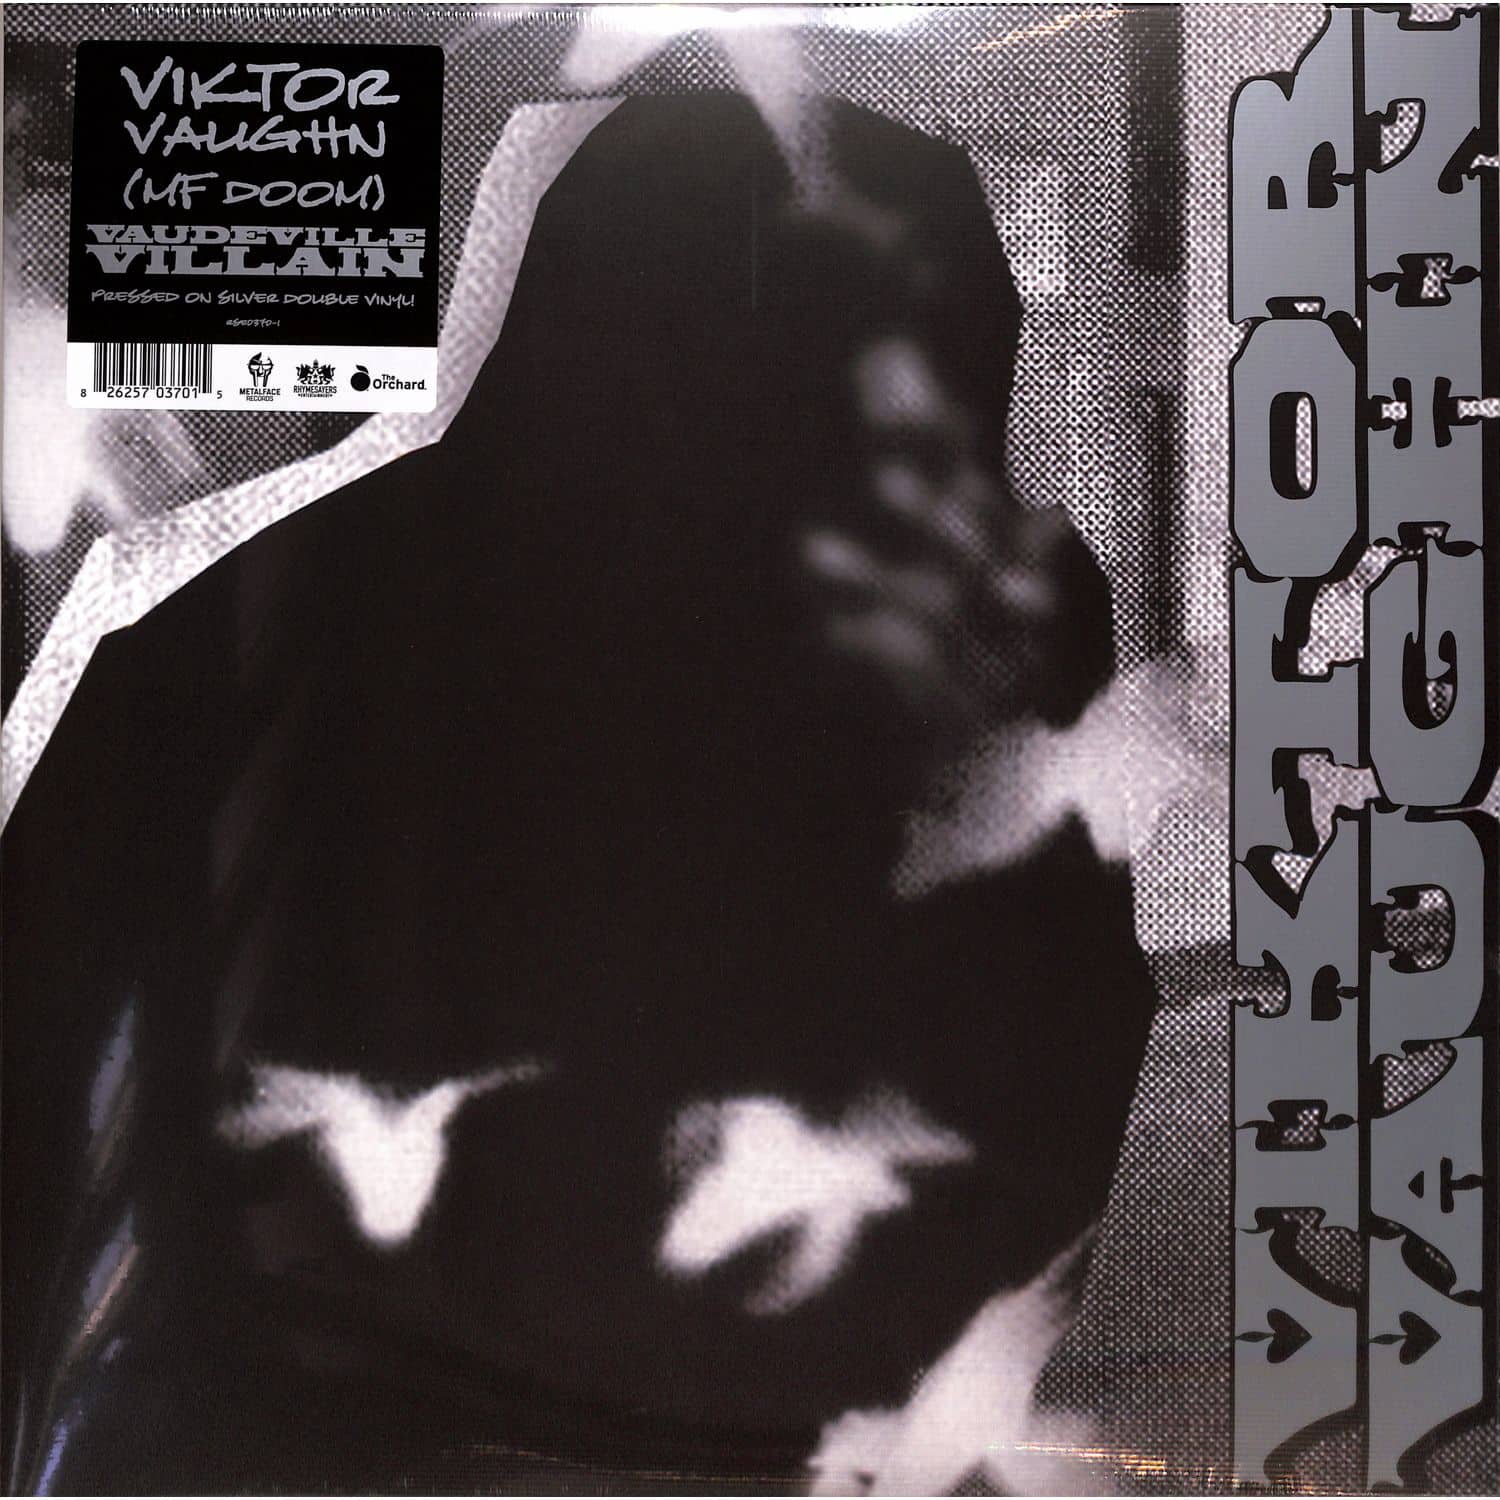 Viktor Vaughn - VAUDEVILLE VILLAIN 